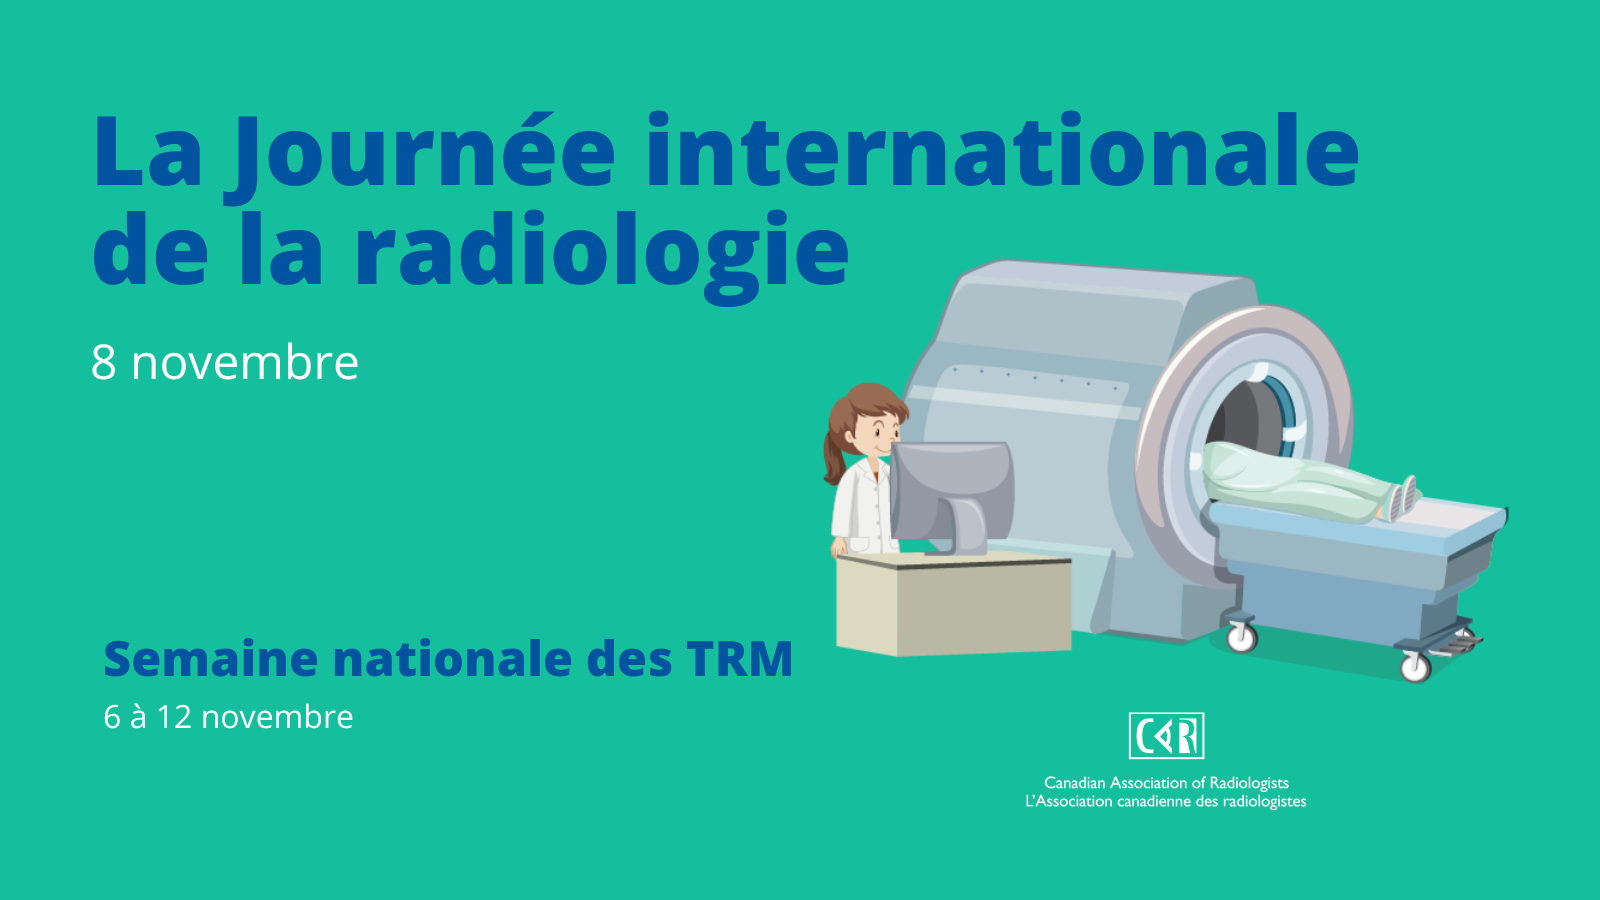 La Journée internationale de la radiologie, une journée pour mettre la